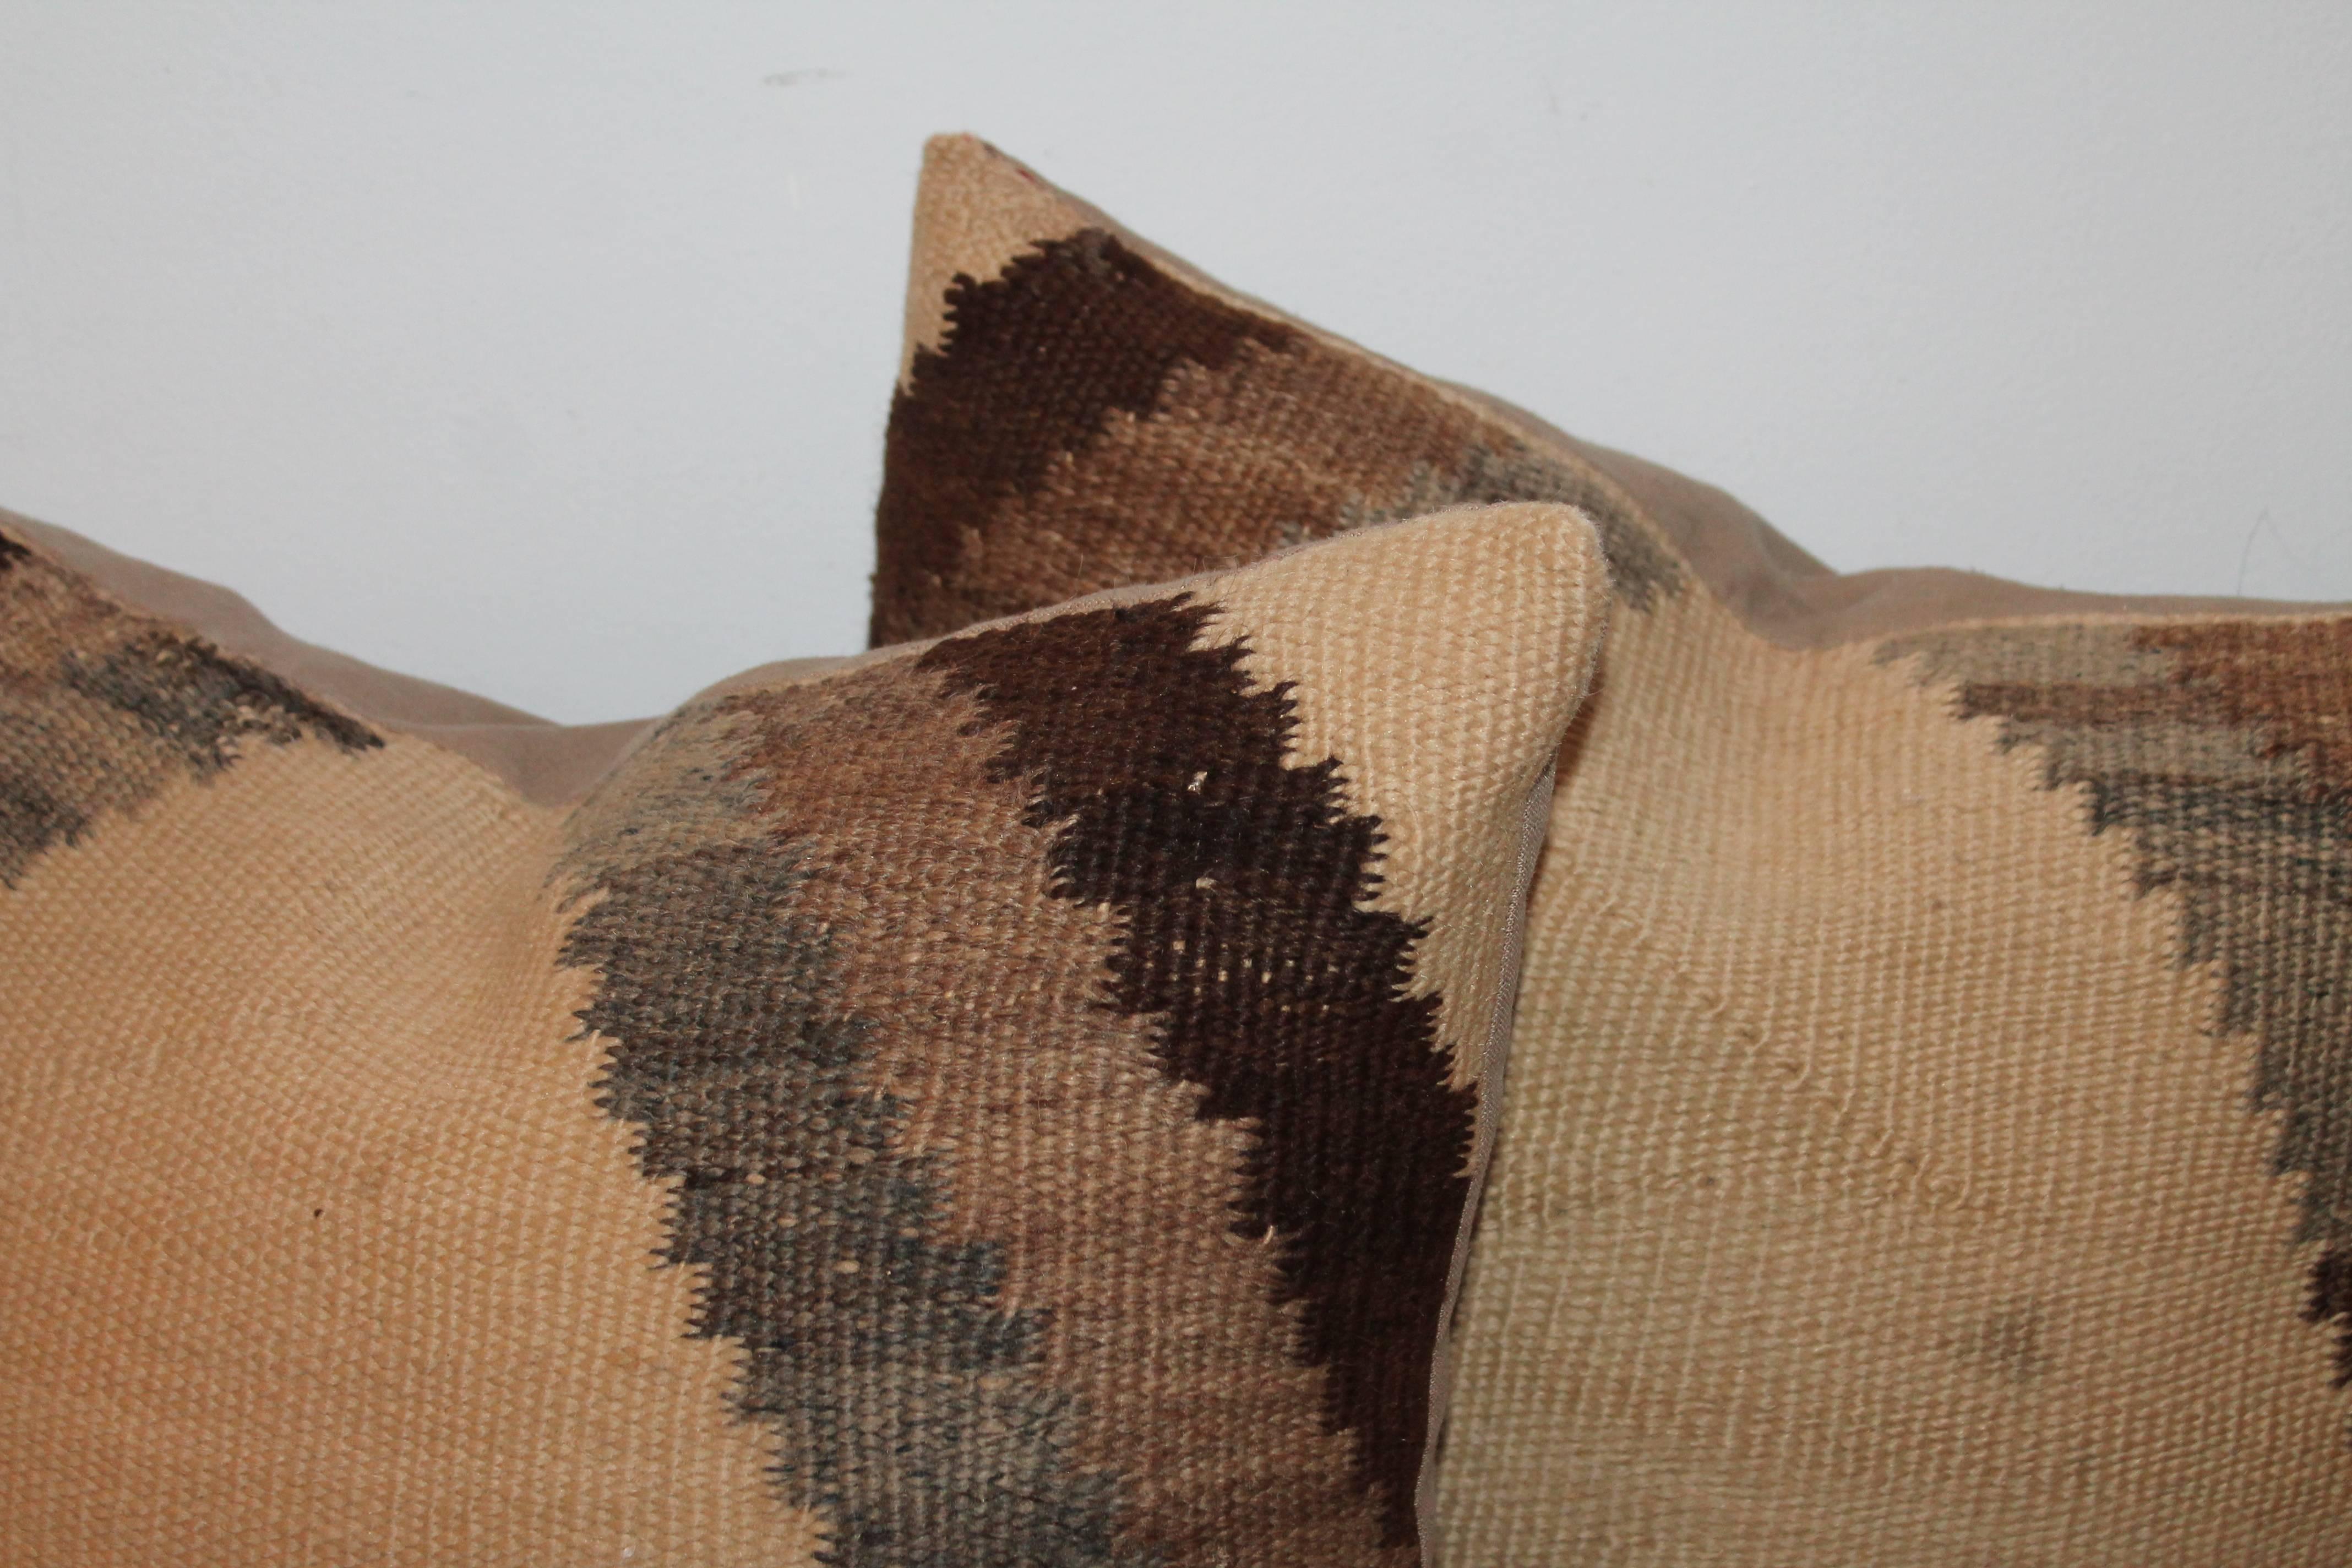 Paire de coussins de tissage Navajo marron et feu. Ces oreillers de tissage ont les lignes paresseuses et sont dans des couleurs très neutres.